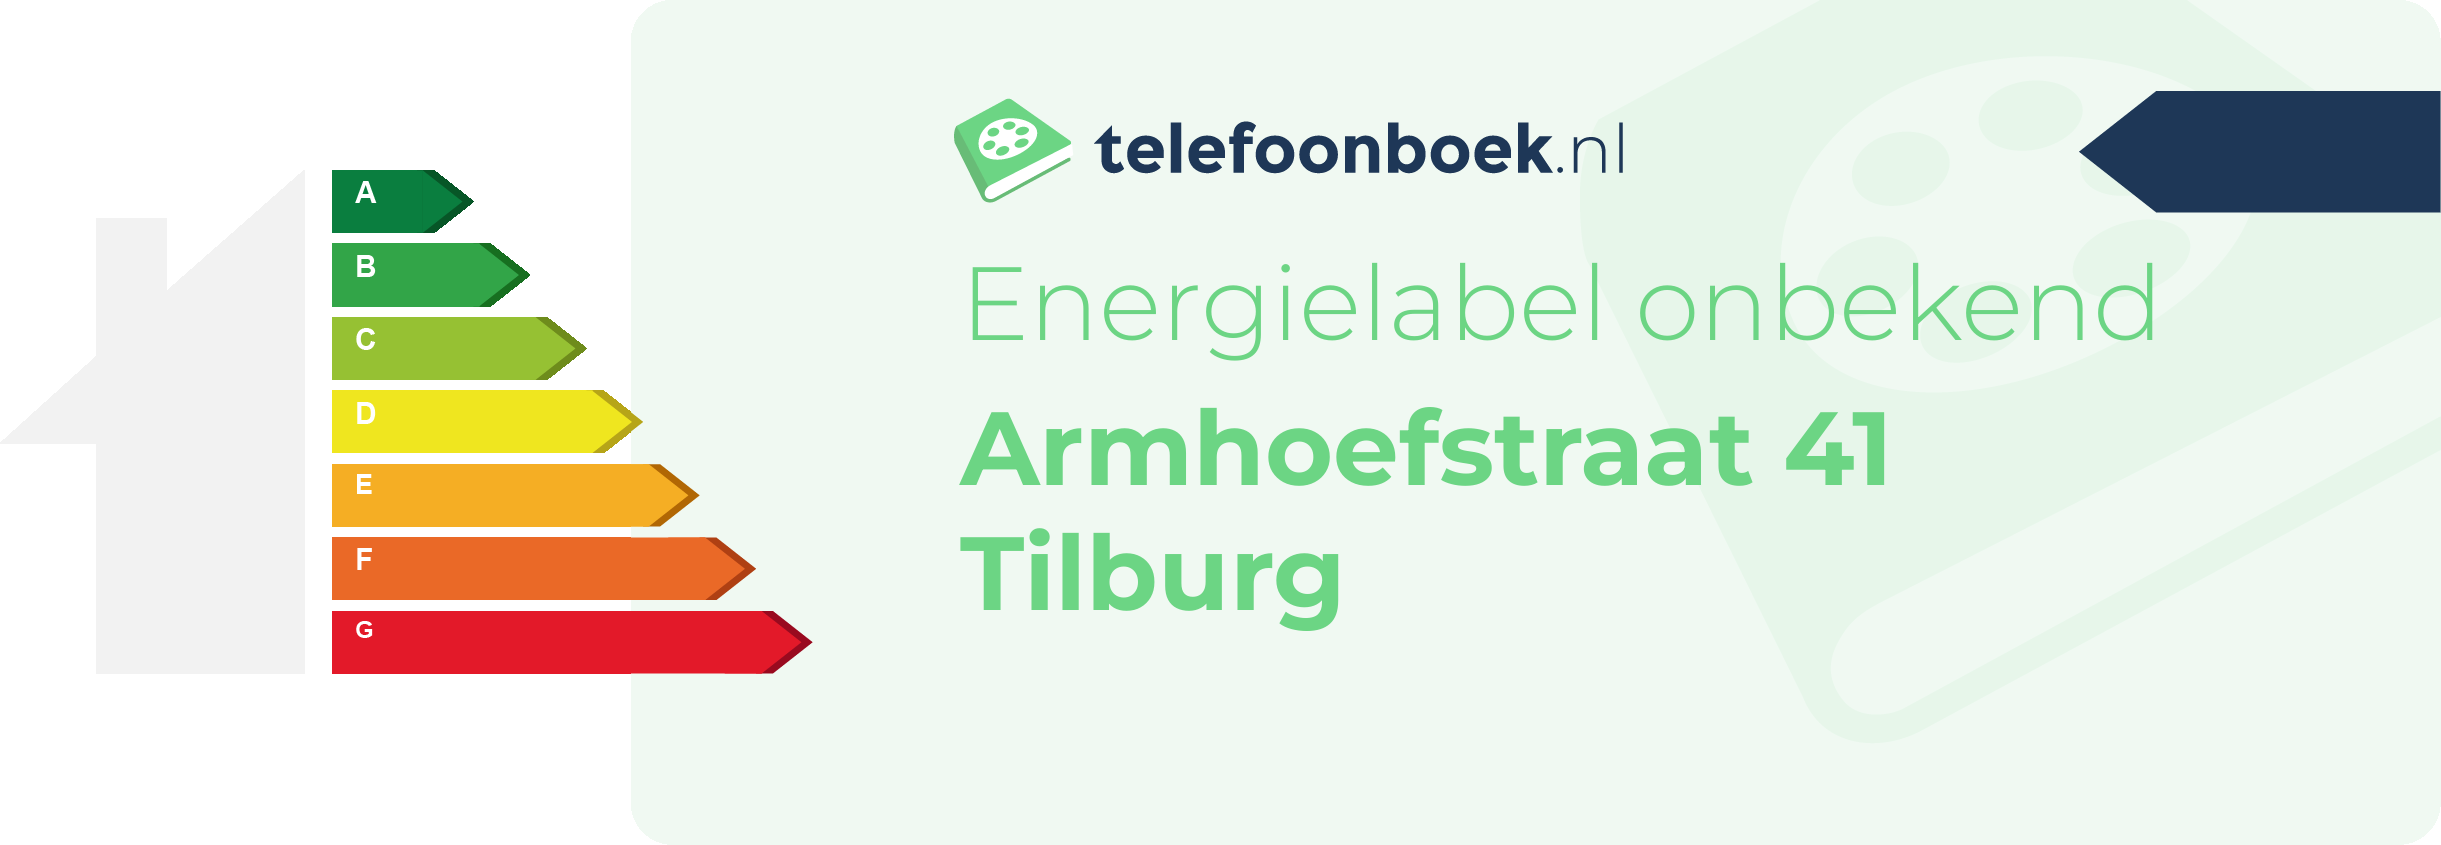 Energielabel Armhoefstraat 41 Tilburg